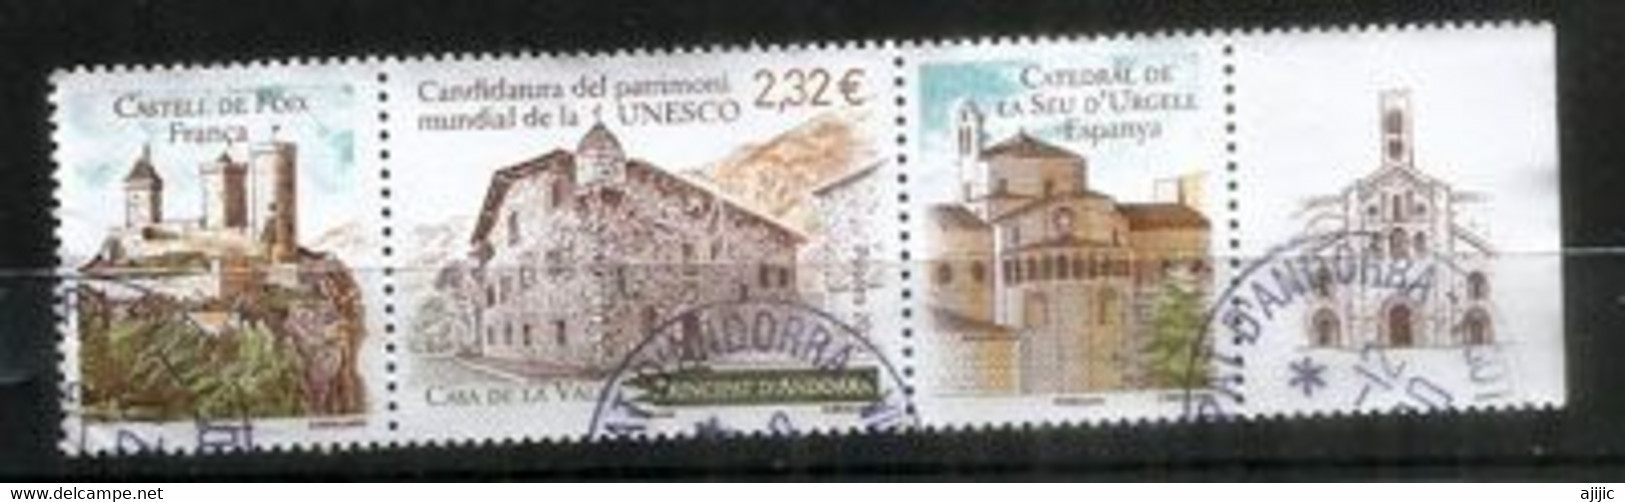 UNESCO.ANDORRA-FRANCE-ESPAGNE (Candidature) Chateau De Foix,Cathedrale Seo Urgell,Casa De La Vall,oblitéré - Gebraucht